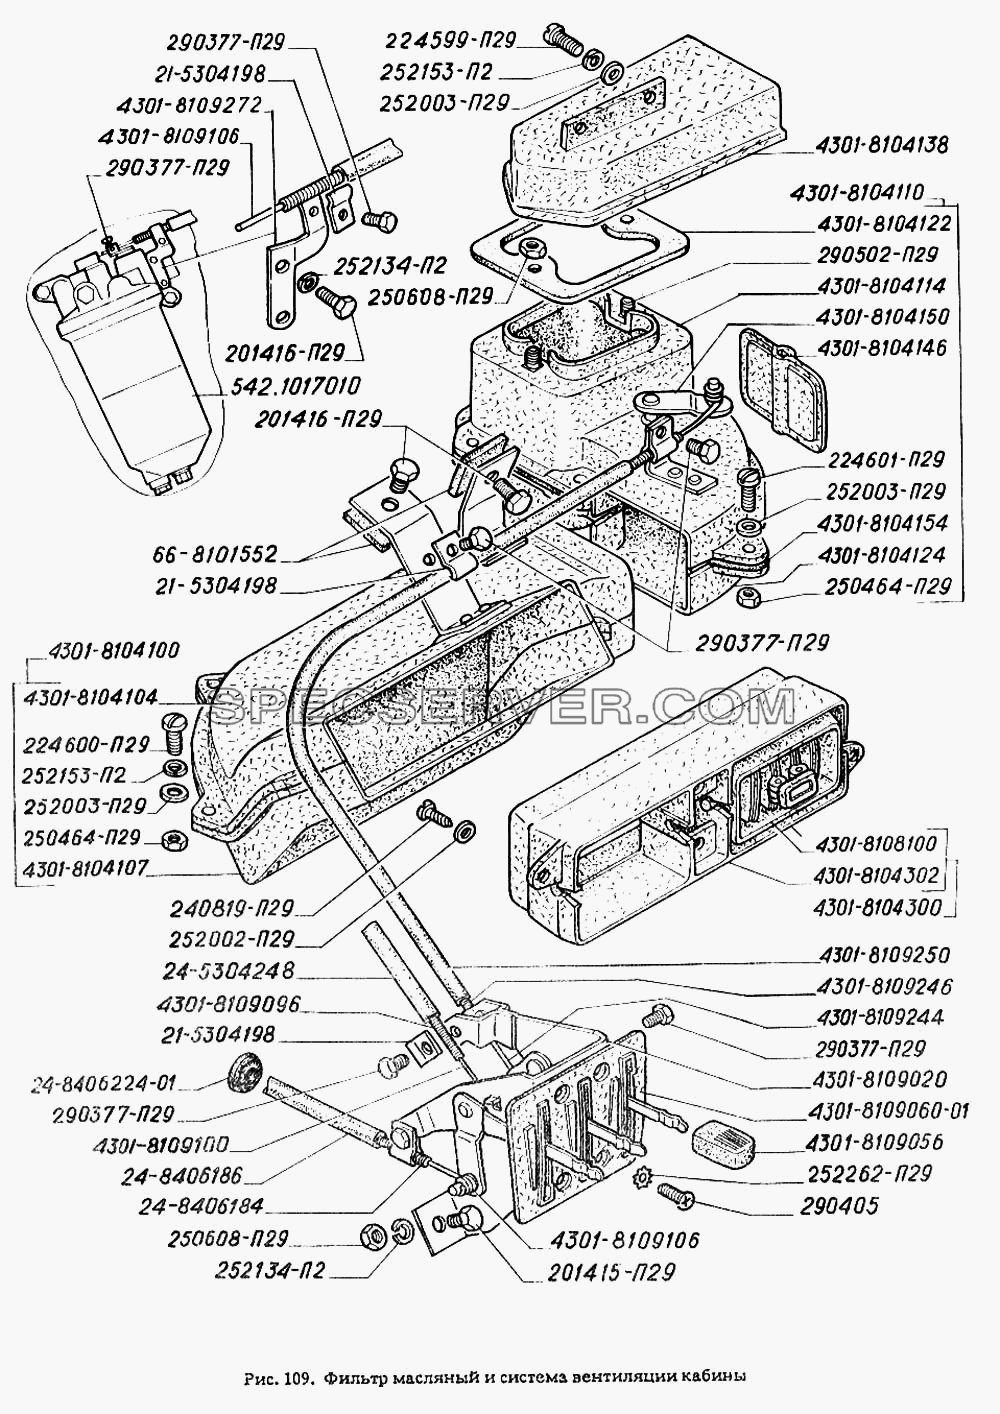 Фильтр масляный и система вентиляции кабины для ГАЗ-4301 (список запасных частей)